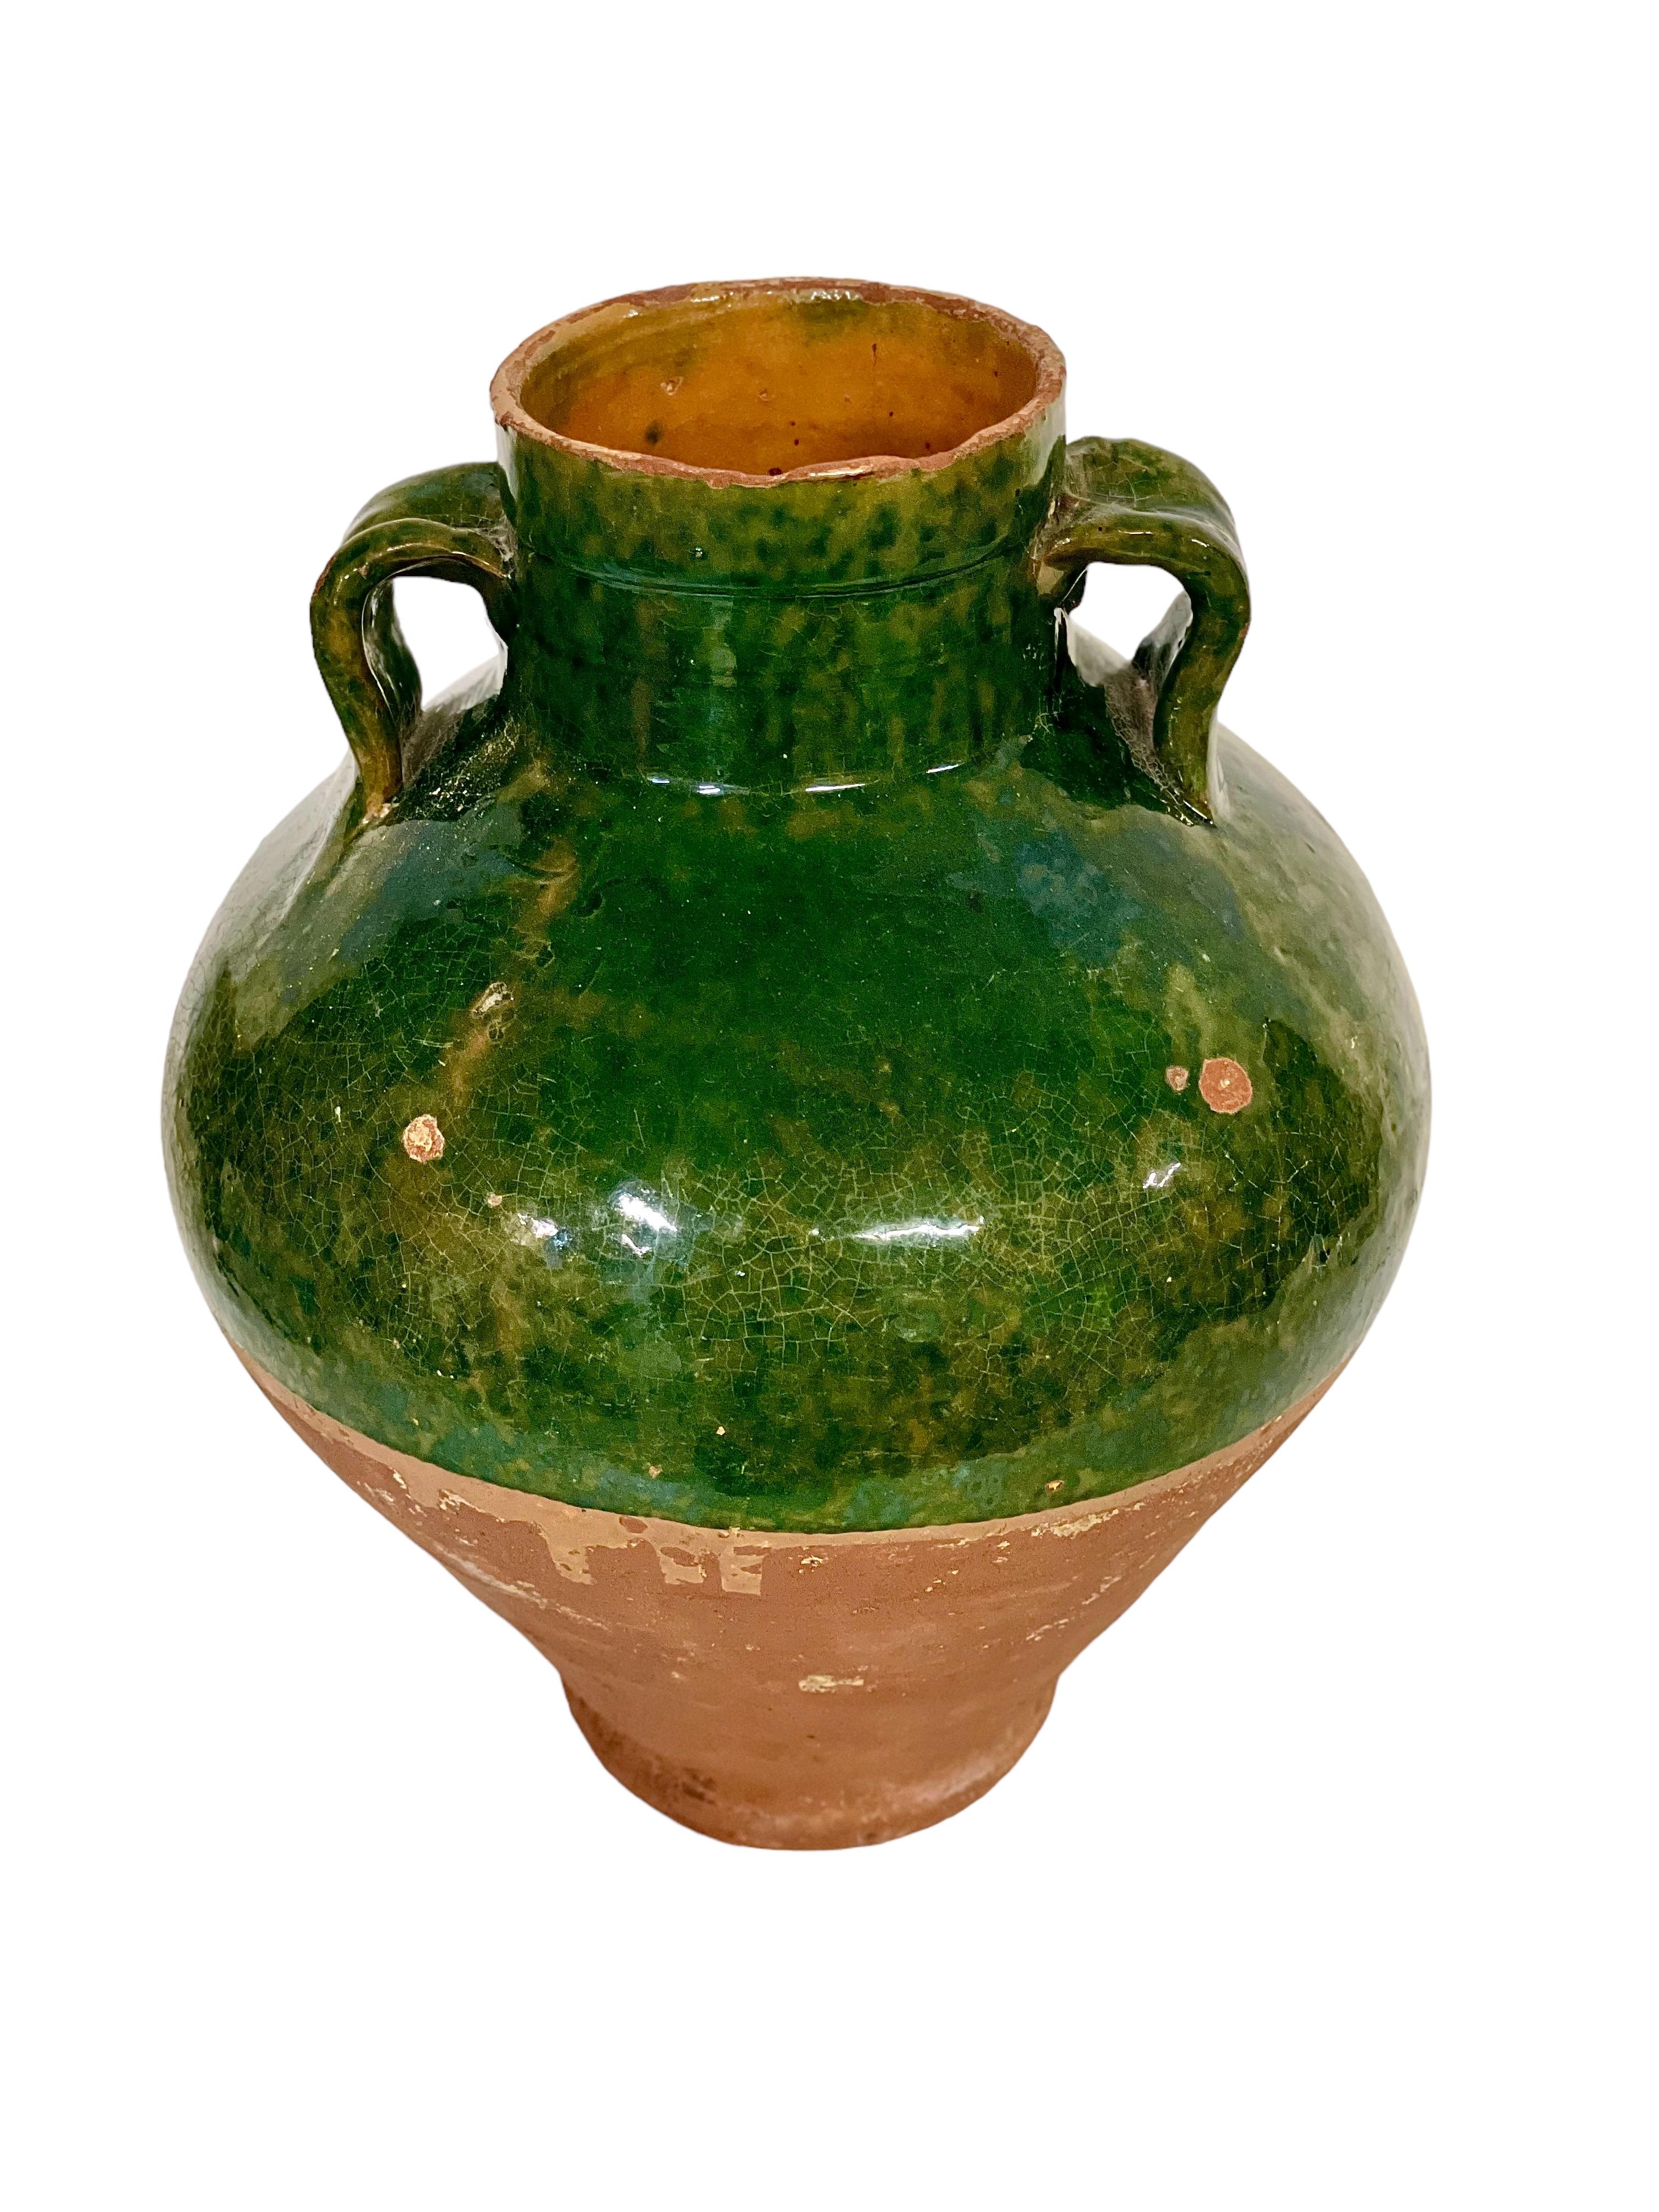 Dieser prächtige antike französische Terrakottatopf aus dem 19. Jahrhundert, halb glasiert in leuchtendem Smaragdgrün, diente ursprünglich als Haushaltsgefäß für die Aufbewahrung von Olivenöl. Innen vollständig verglast, ist nur die obere Hälfte der